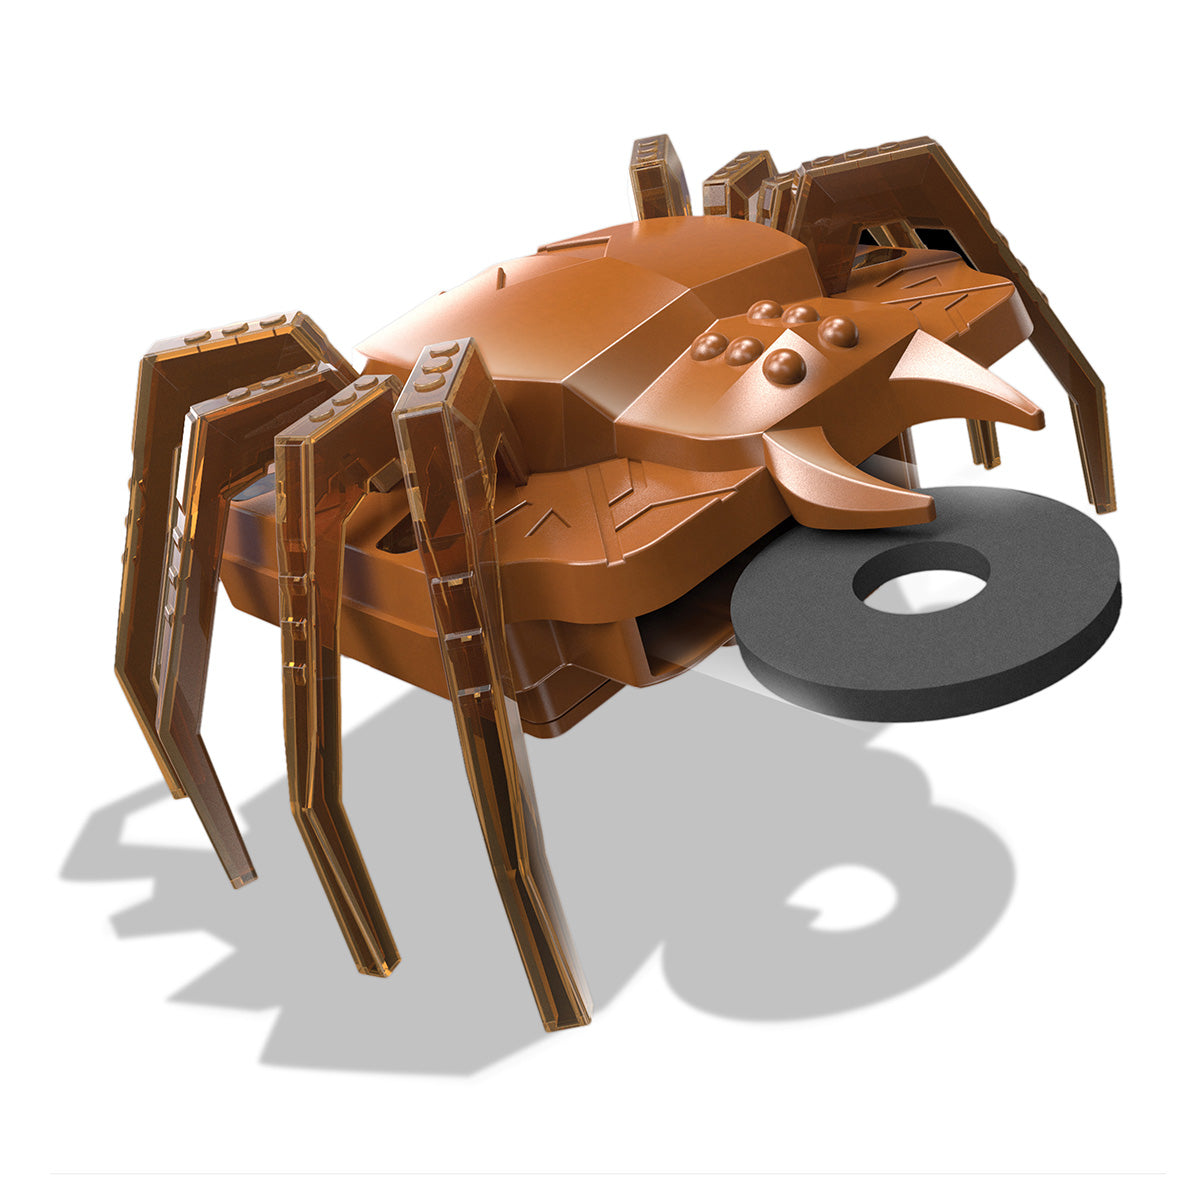 KidzRobotix - Disc Launcher SpiderBot